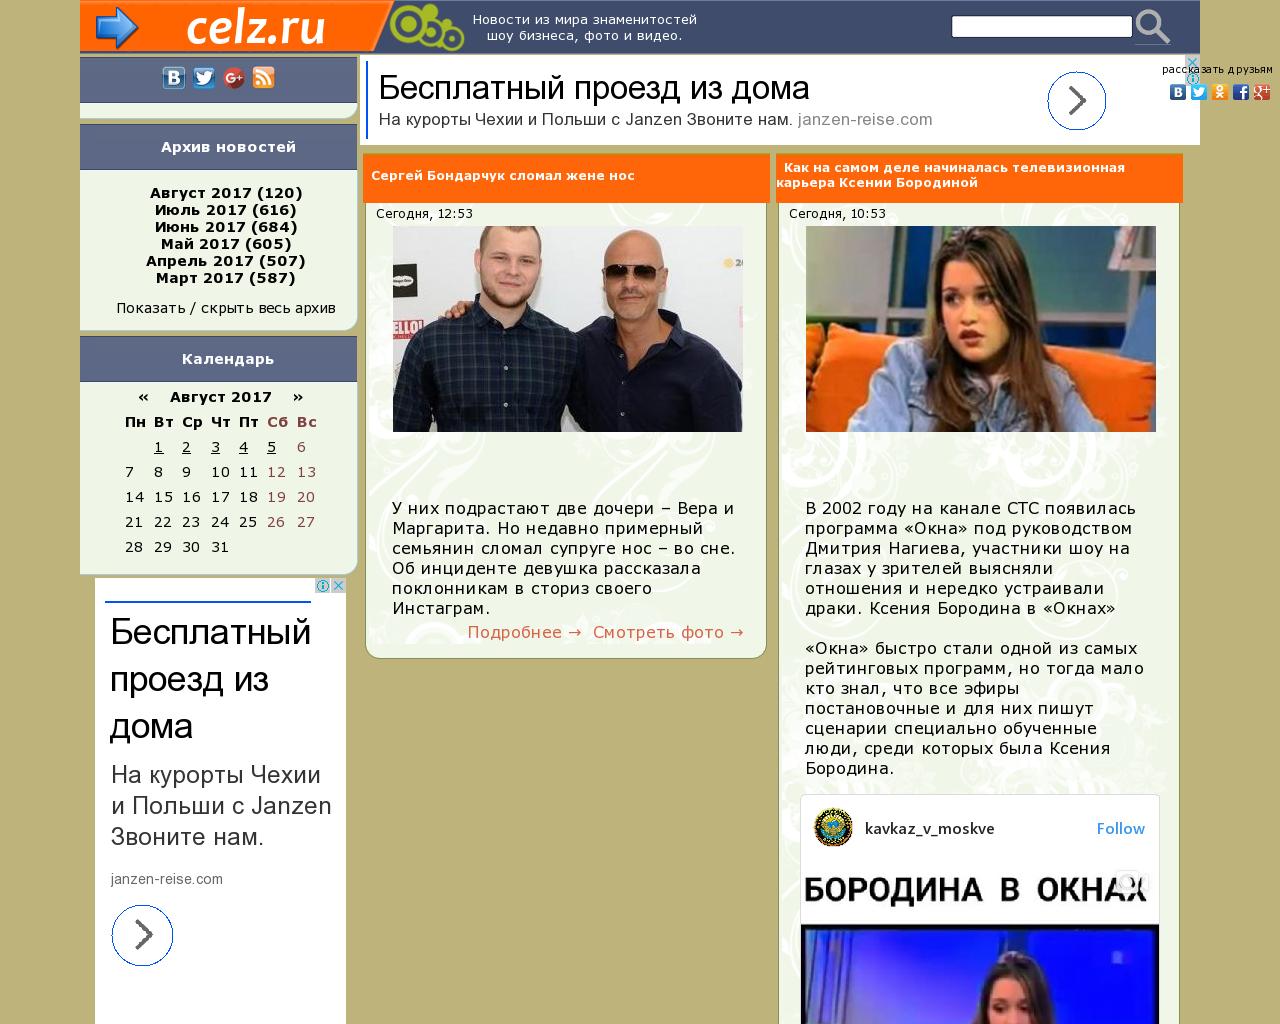 Изображение сайта celz.ru в разрешении 1280x1024